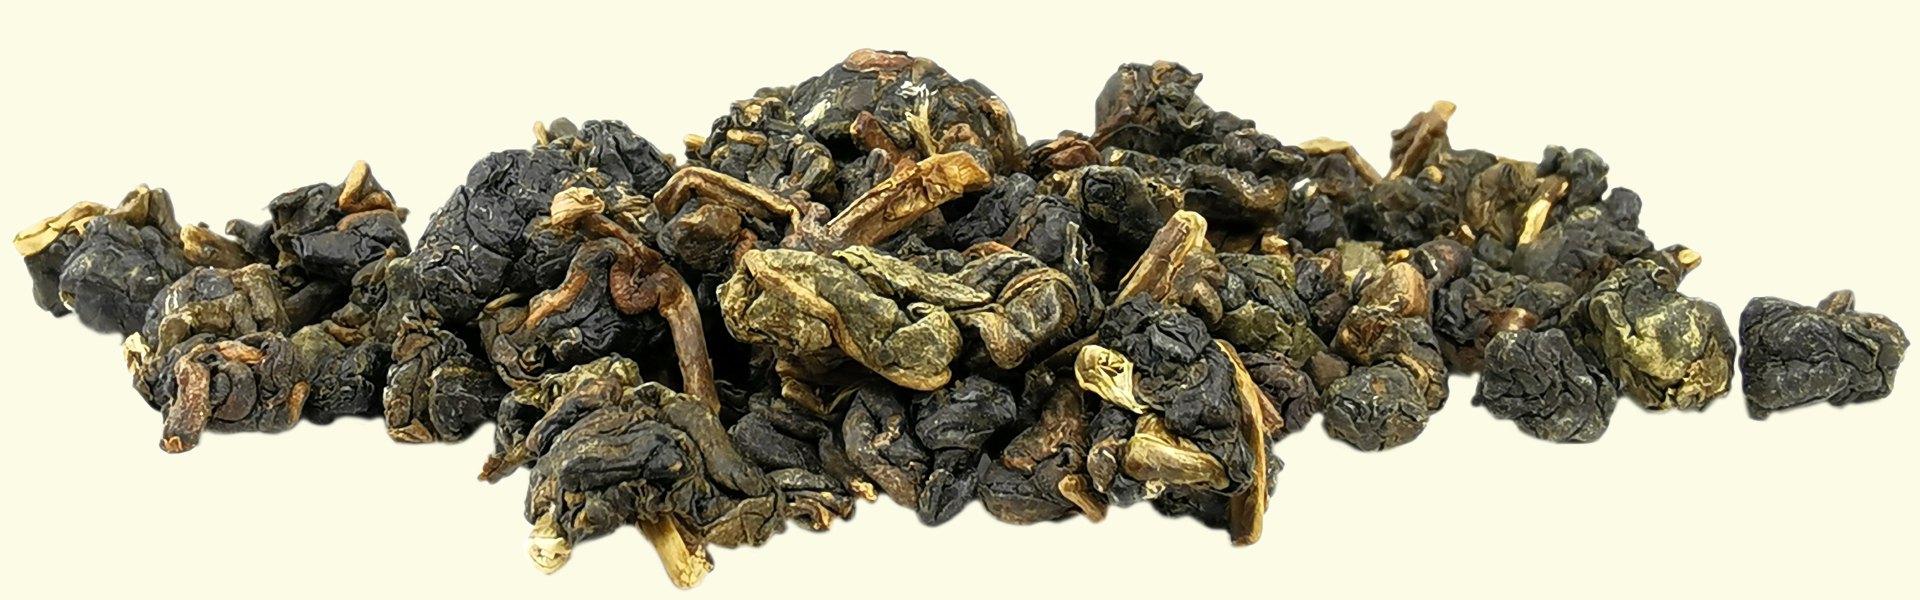 Avec ses feuilles roulées d'un aspect bien plus sombre que les autres thés de la gamme, le thé Oolong #19 Tong Ting est destiné à être infusé plusieurs fois de suite pour apprécier l'évolution de son goût & de ses arômes jusqu'au déploiement complet des feuilles.